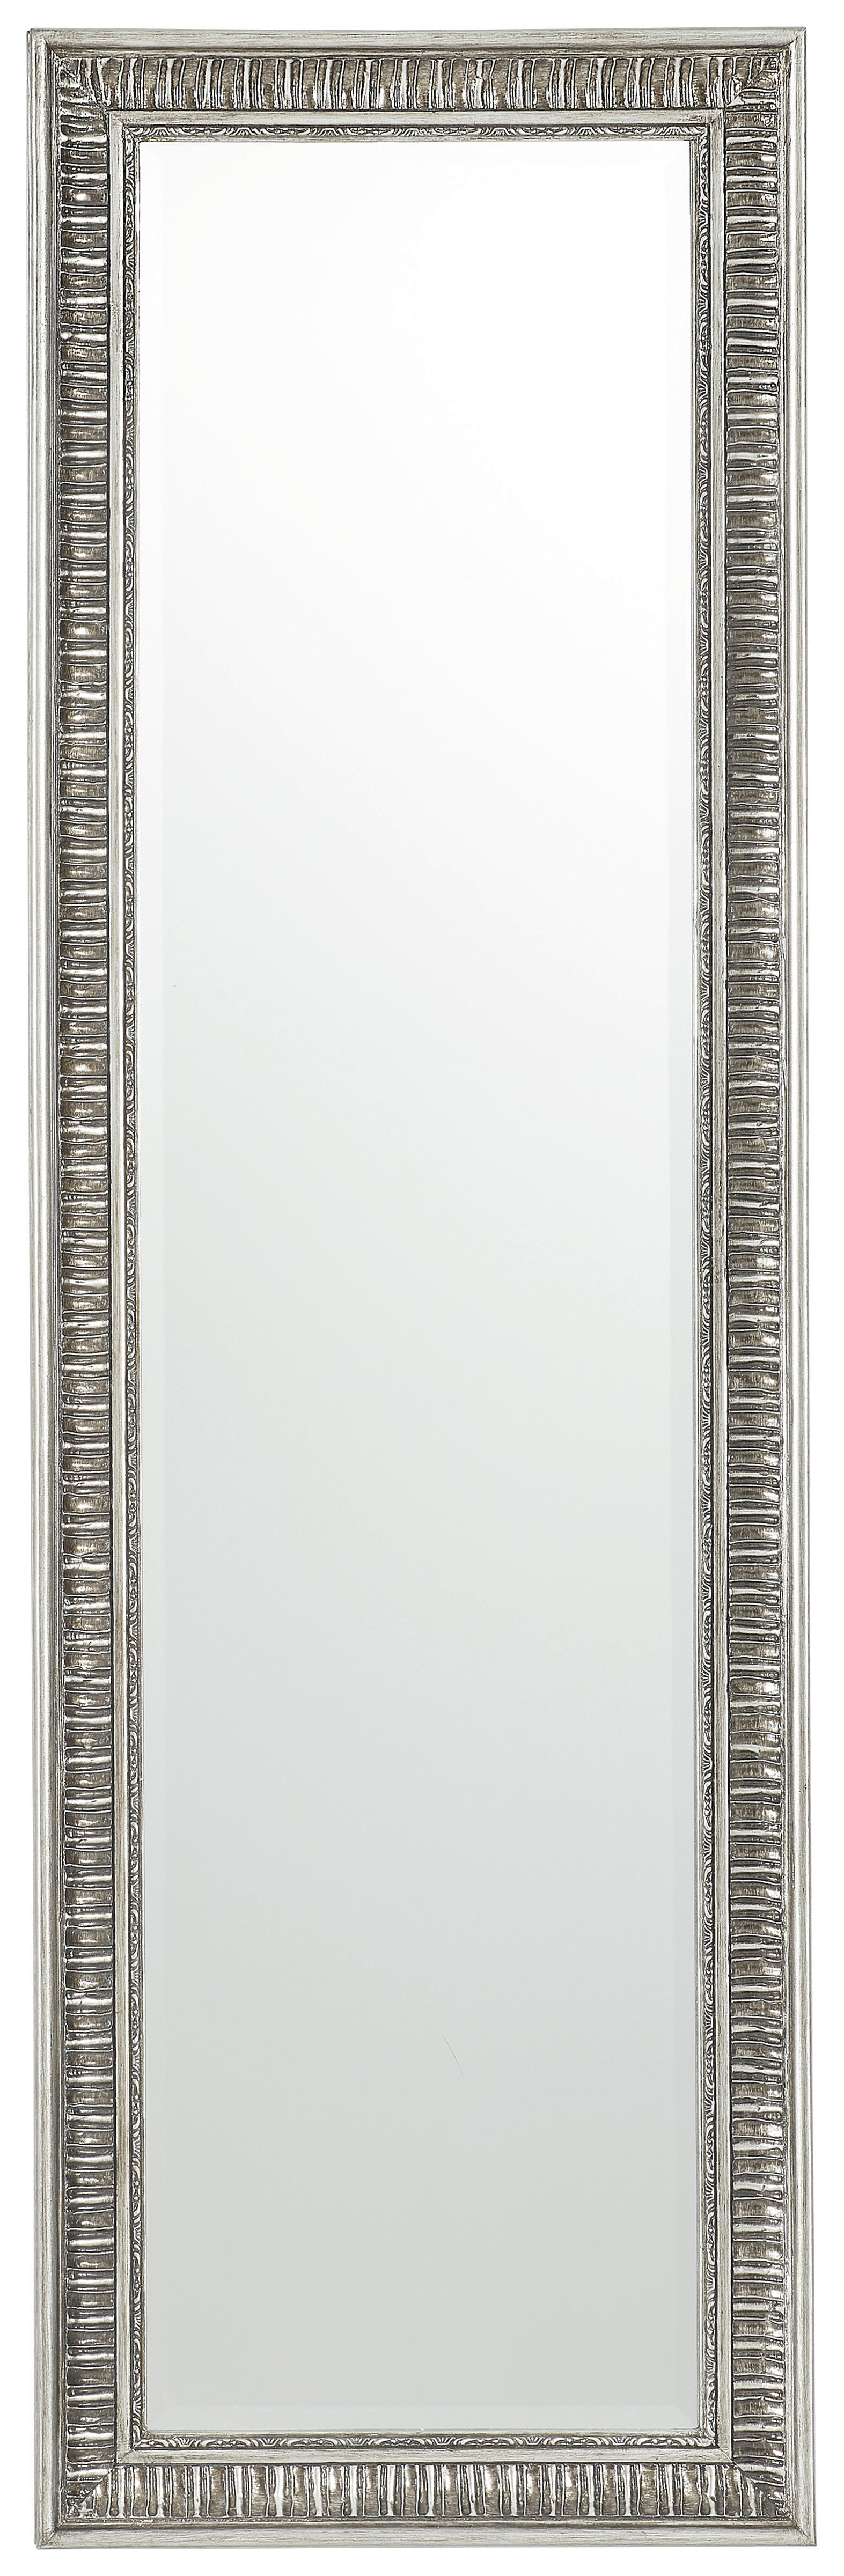 Xora NÁSTĚNNÉ ZRCADLO 132/40,5/3 cm - barvy stříbra